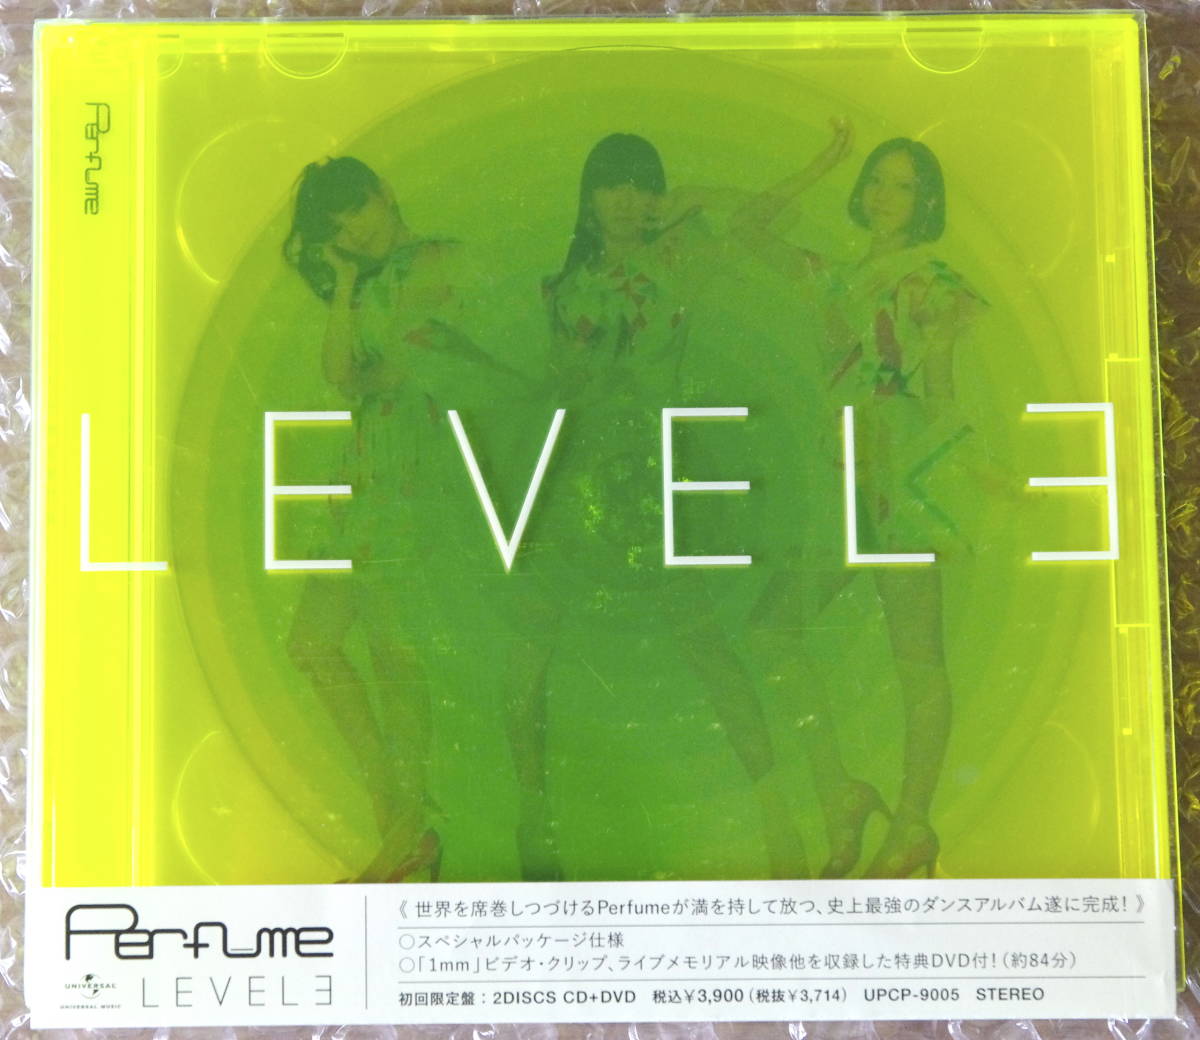 Perfume LEVEL3【初回限定盤特典DVD付】 的详细信息| 雅虎拍卖代拍| FROM JAPAN